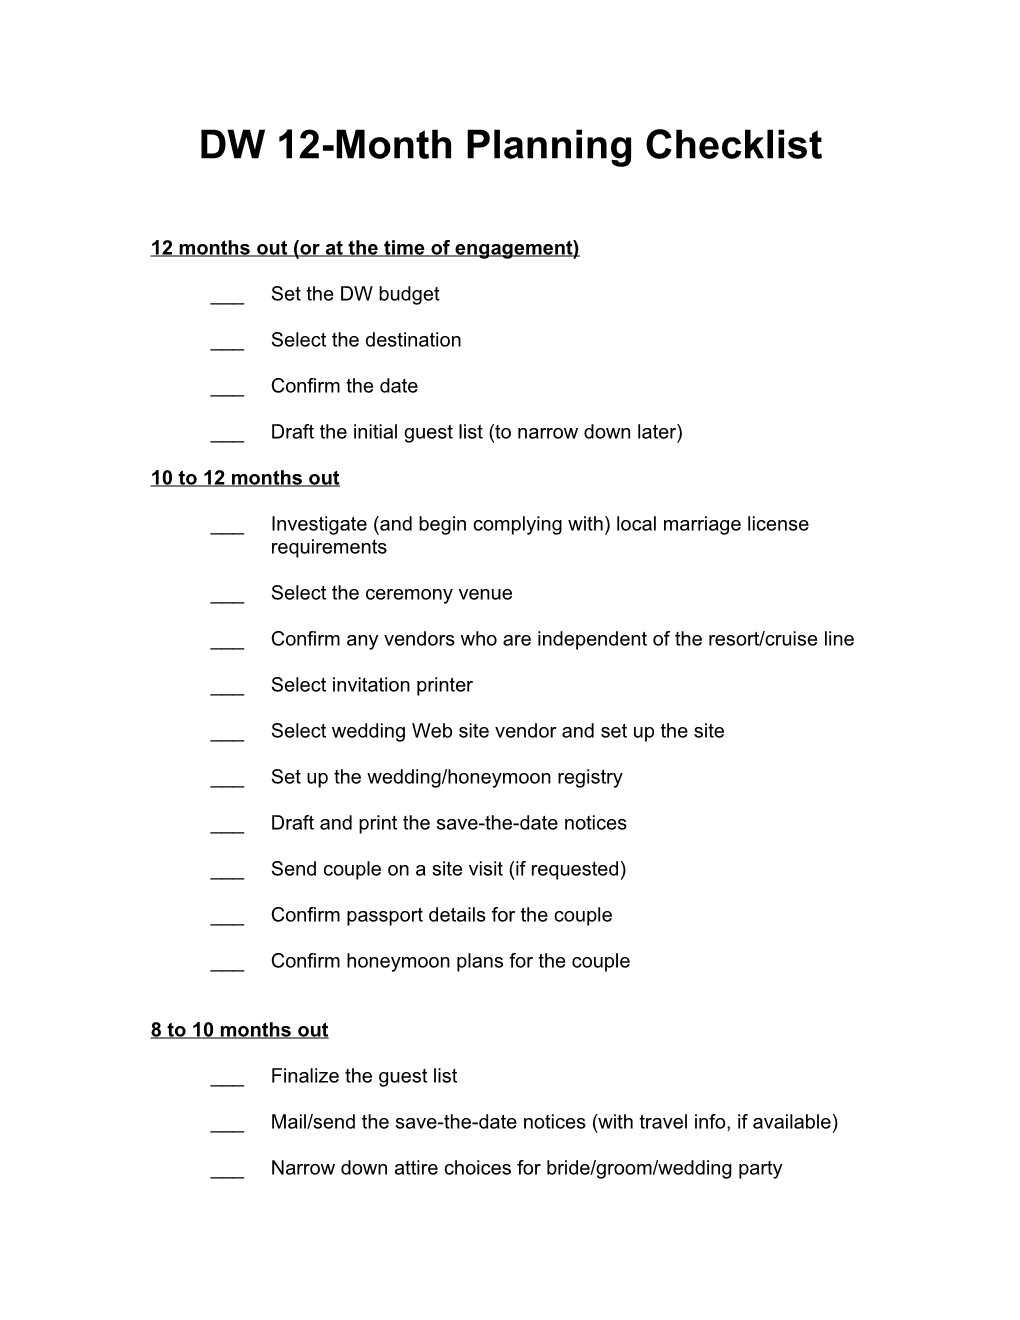 DW 12-Month Planning Checklist